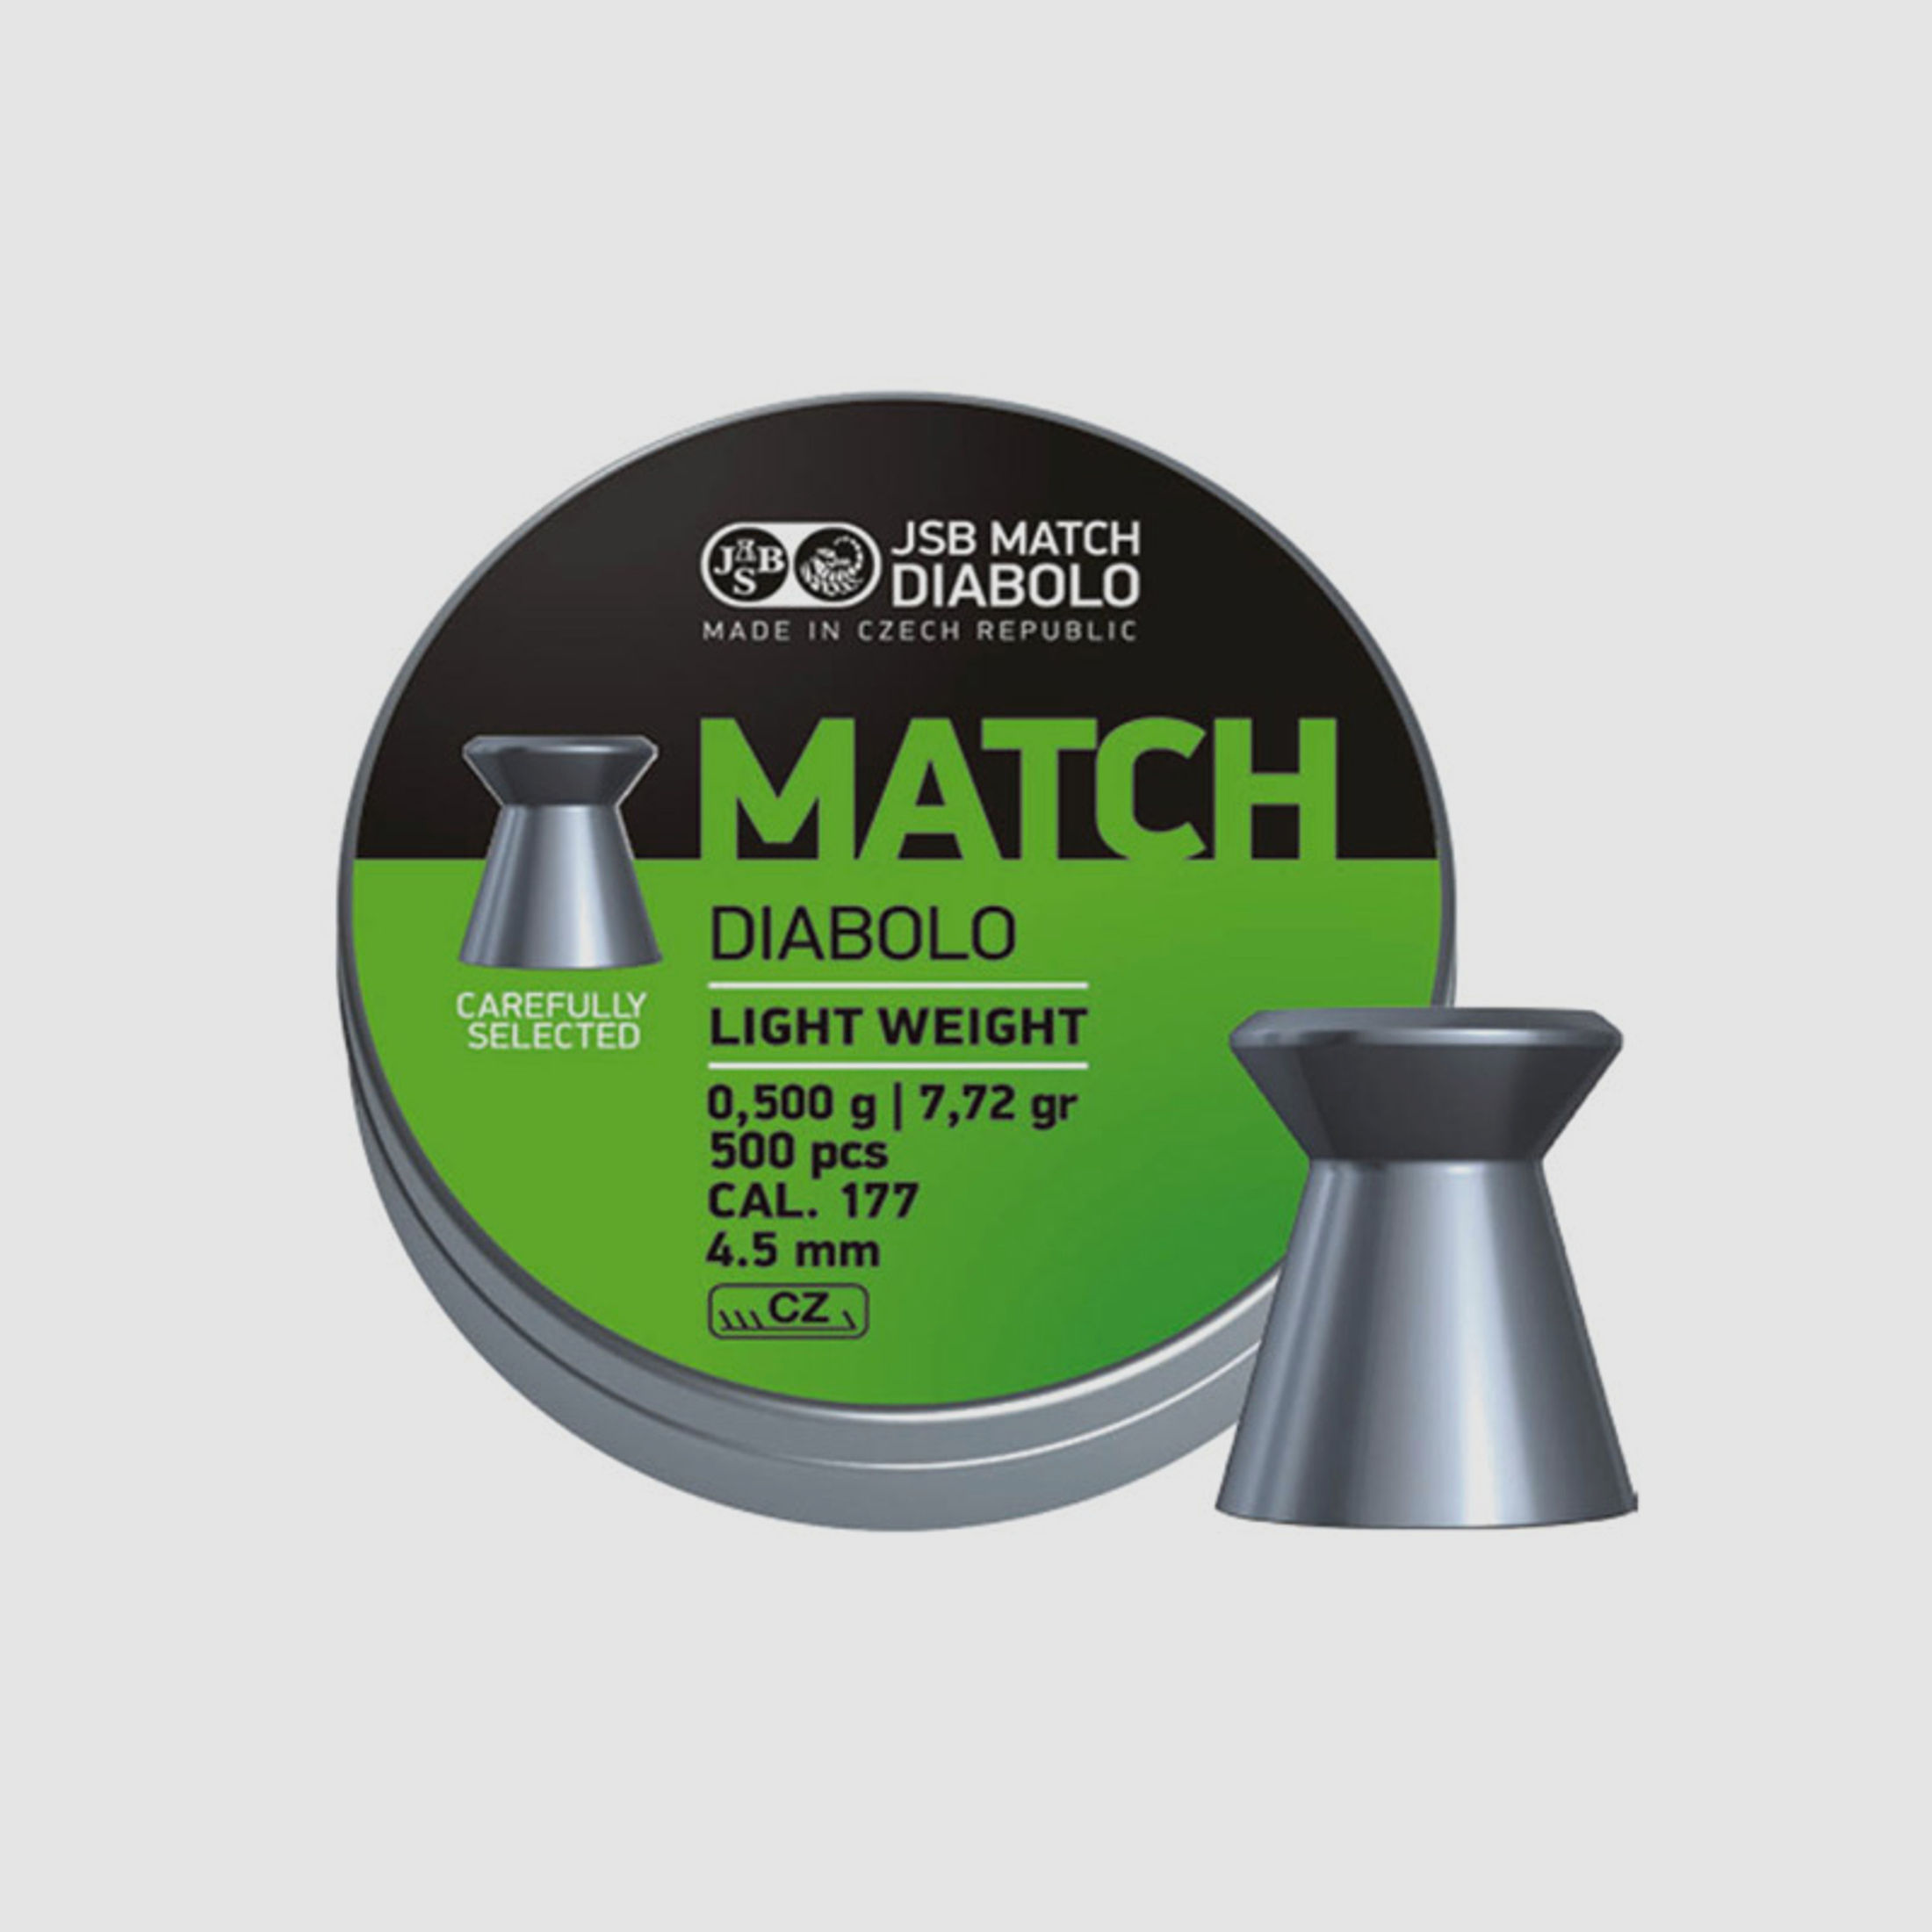 Flachkopf Diabolos JSB Match Light Kaliber 4,52 mm 0,475 g glatt 500 StĂĽck